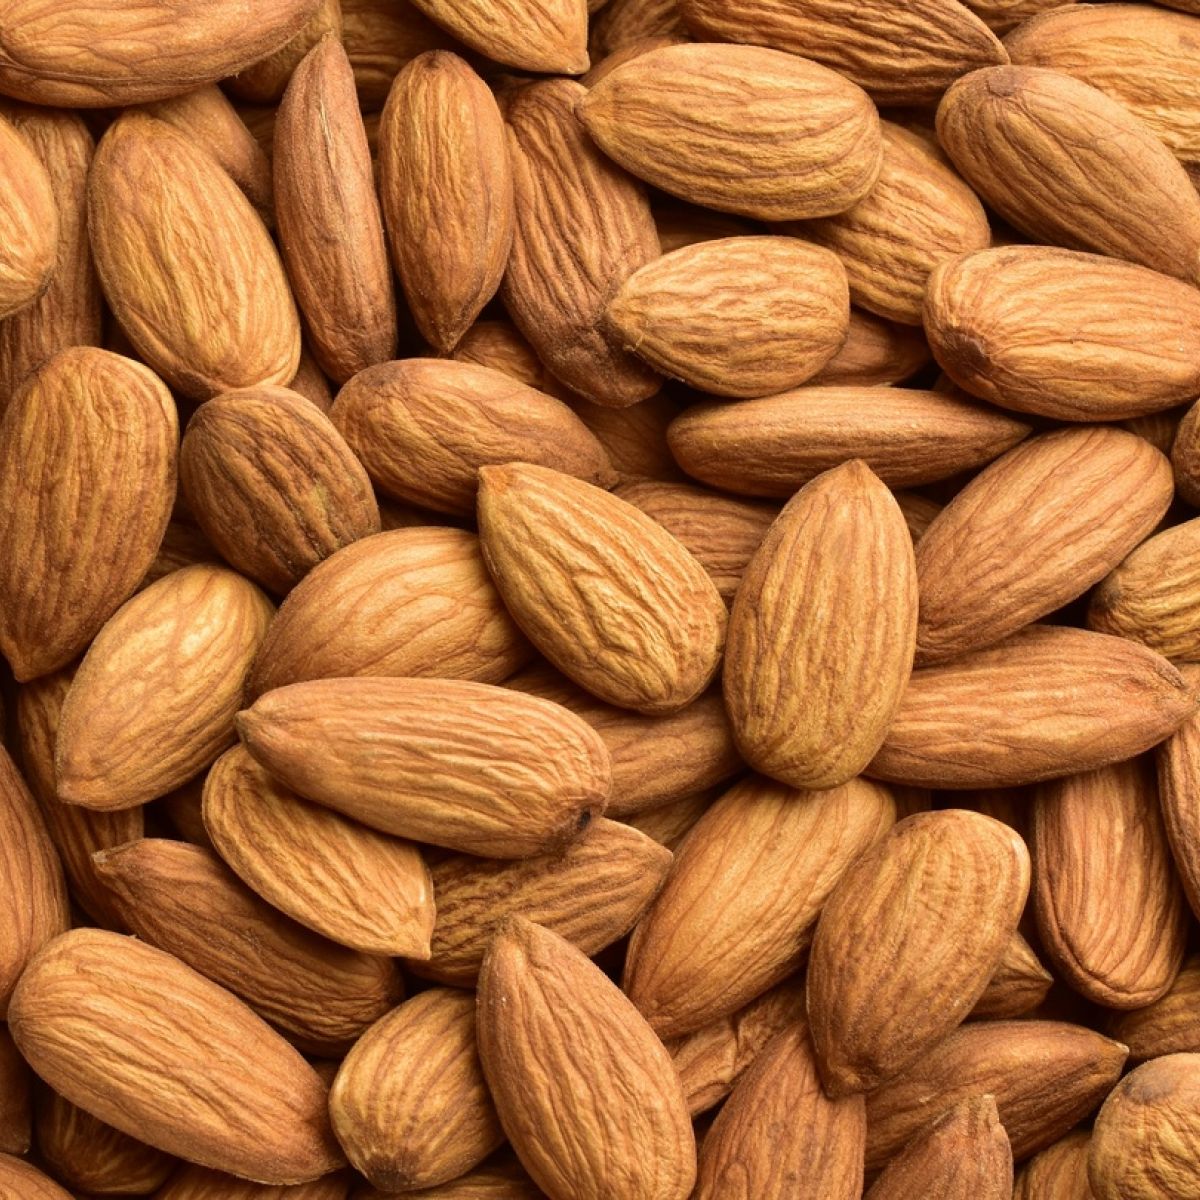 jord Kriminel eksil Are almonds bad for the environment?